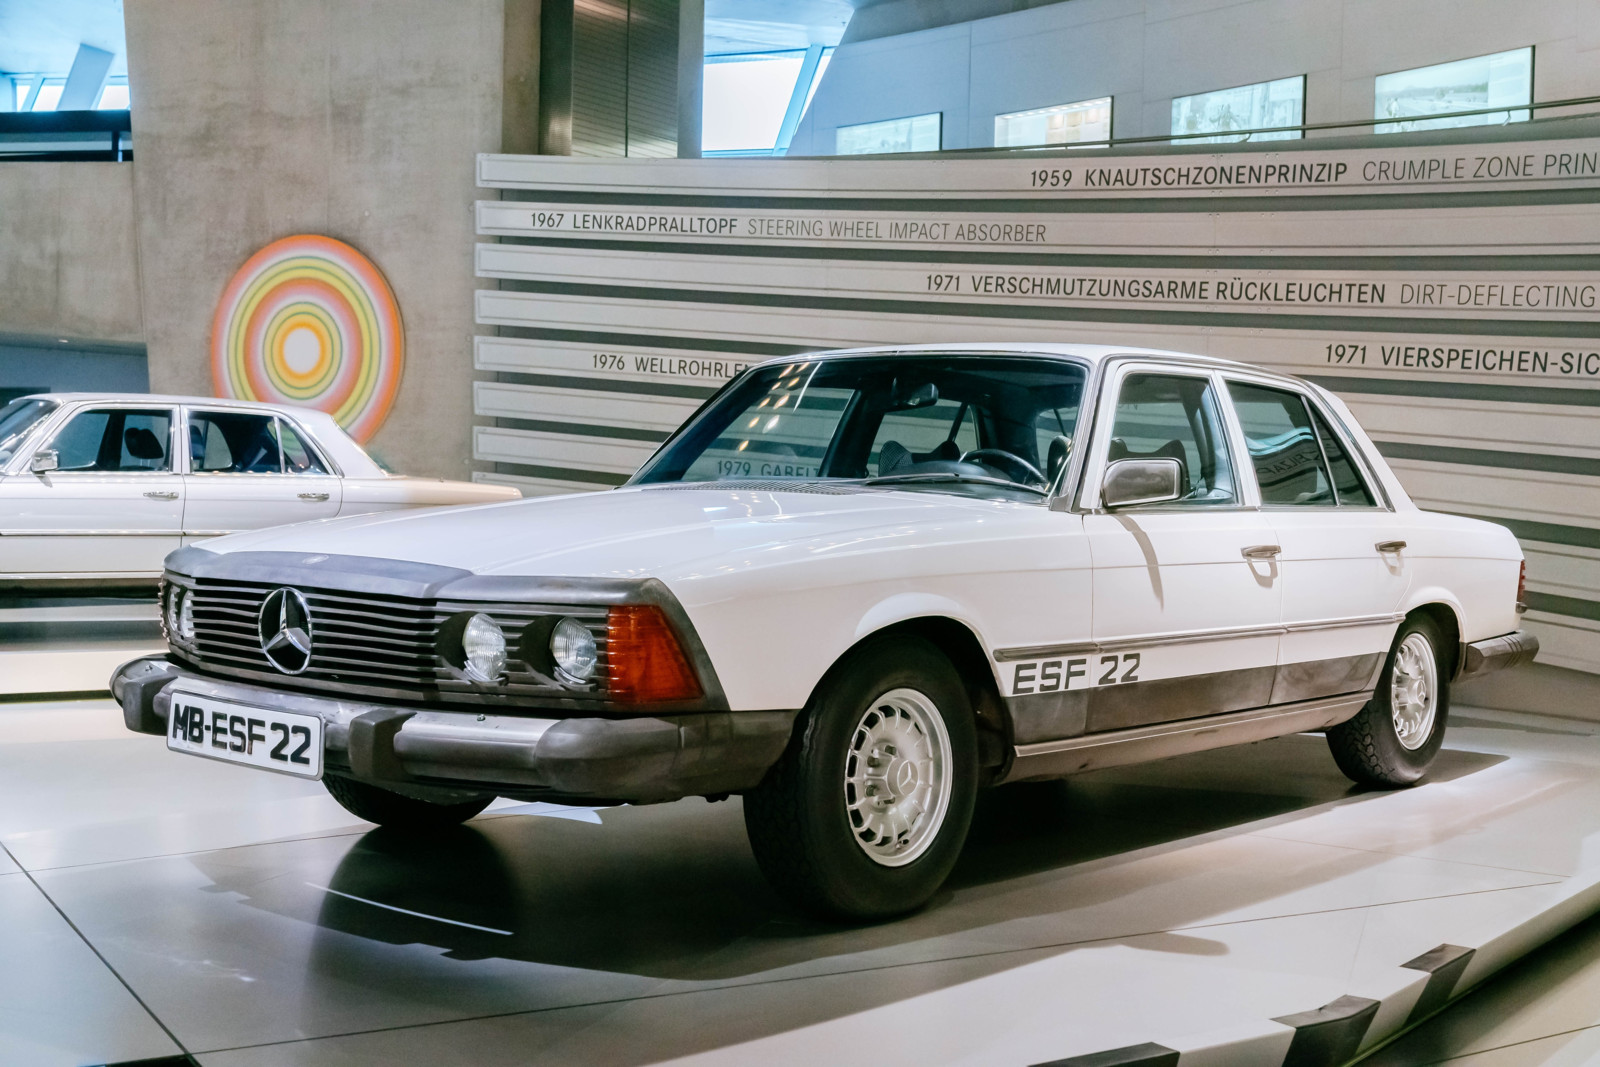  Mercedes-Benz Experimentier-Sicherheits-Fahrzeug ESF 22 aus dem Jahr 1973. Besonders markant ist die geschäumte Front.